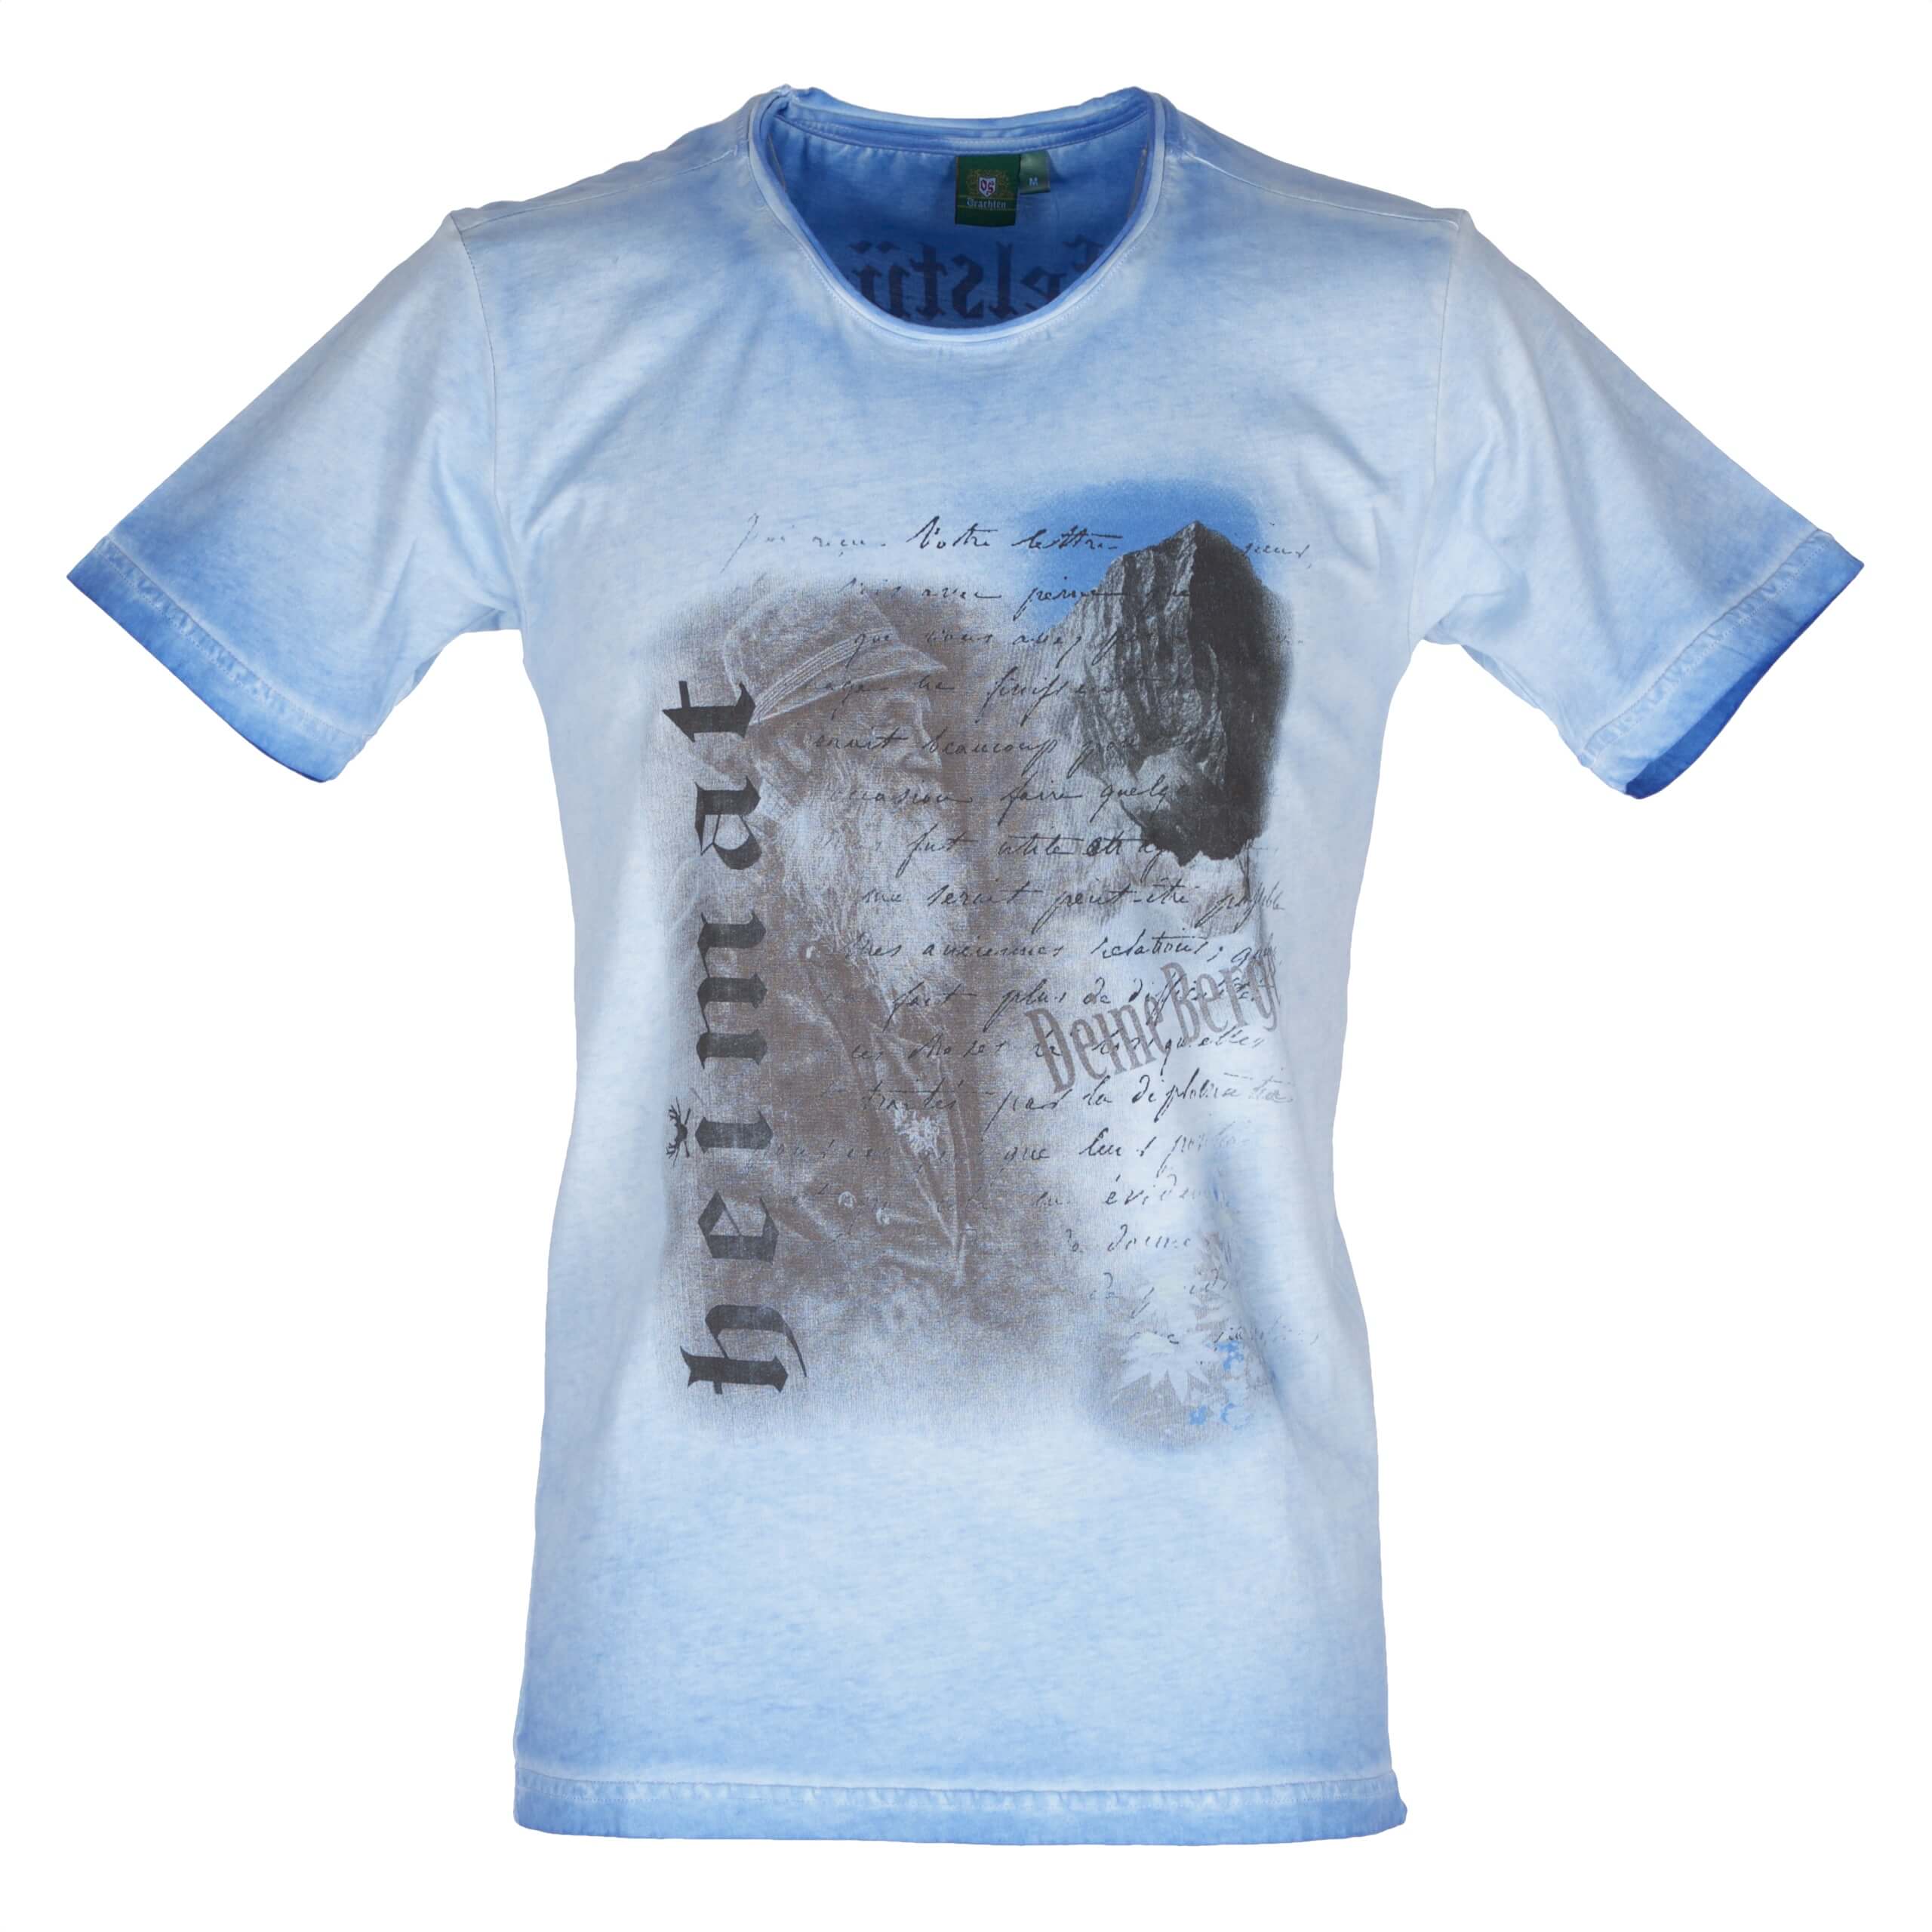 Orbis Herren T-Shirt 428002 3737 Gr S blau Fb 43